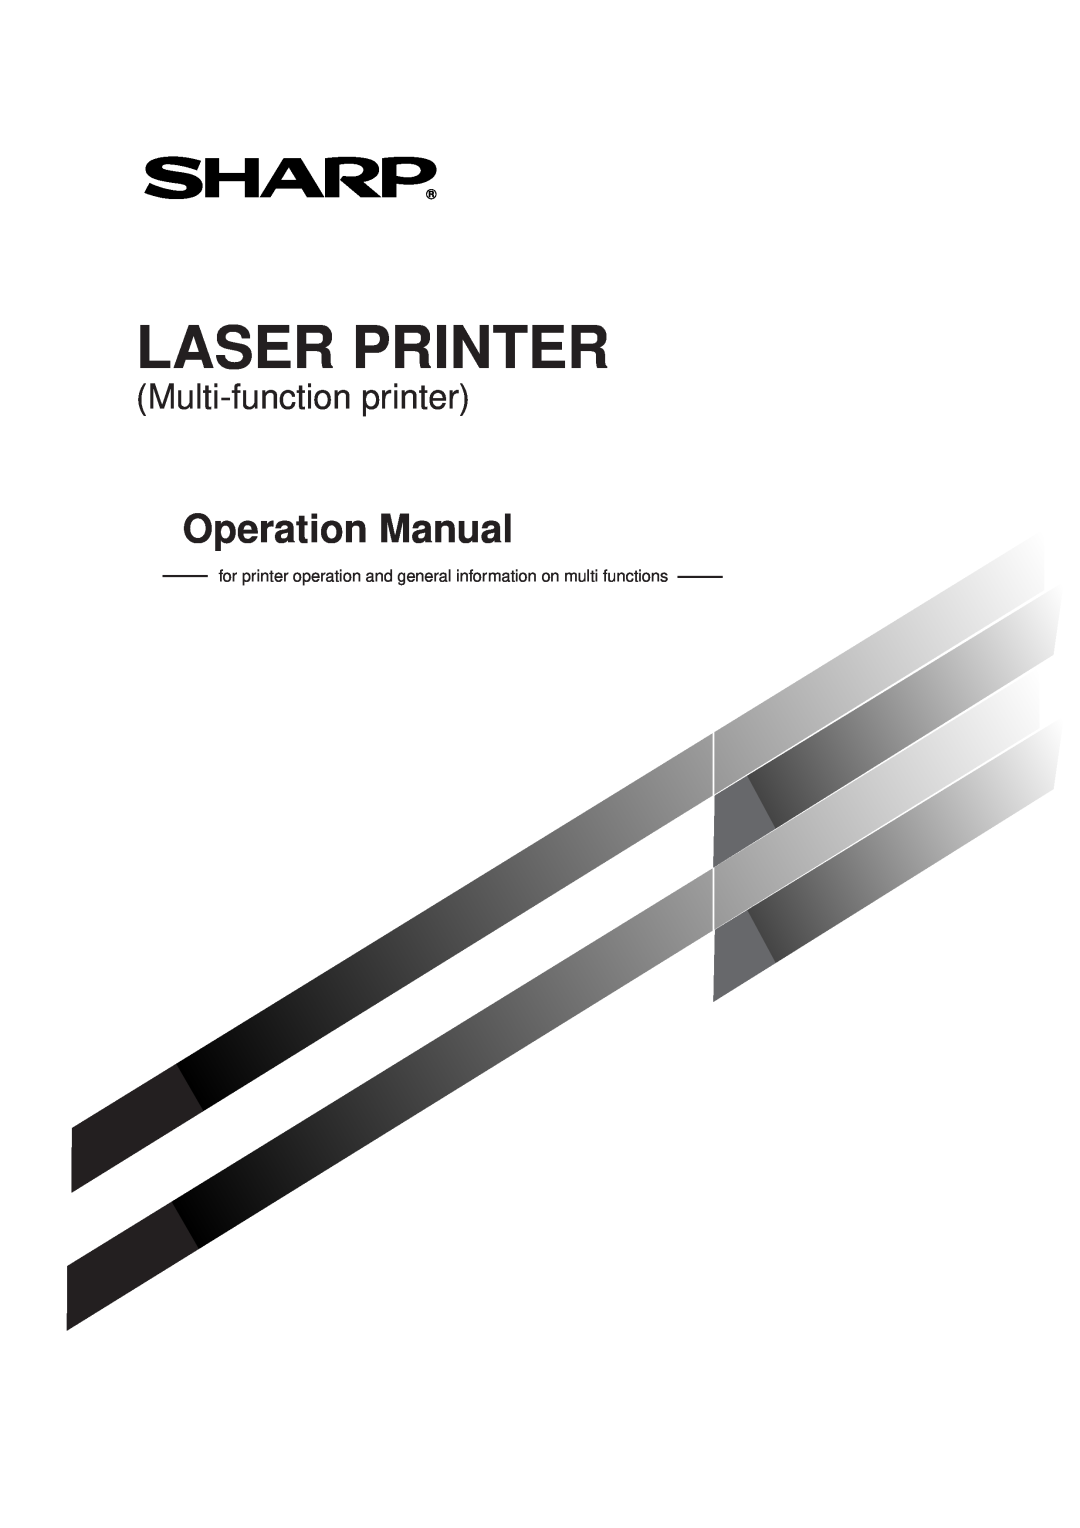 Sharp AR-350, AR_M280 operation manual Laser Printer, Operation Manual, Multi-function printer 